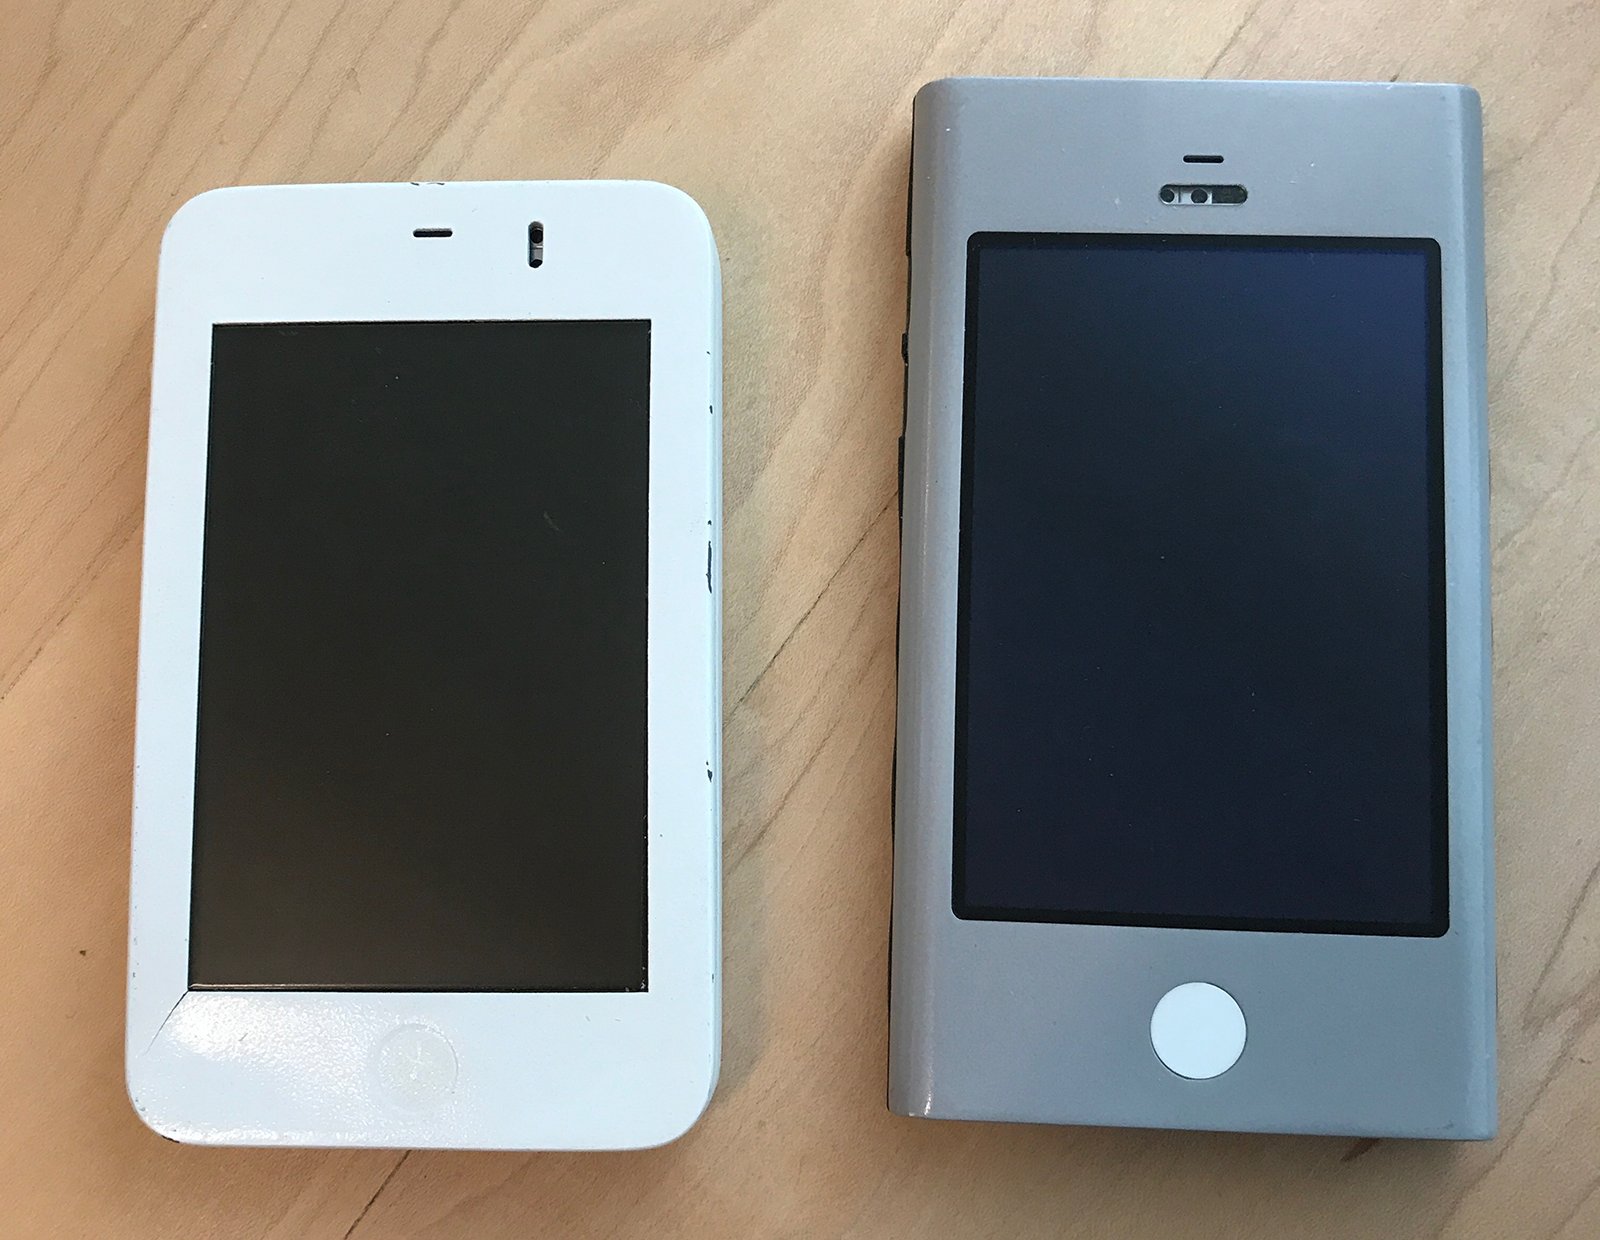 iPhone 10 tuổi: đây là hai nguyên mẫu được dùng phát triển bàn phím ảo cho iPhone